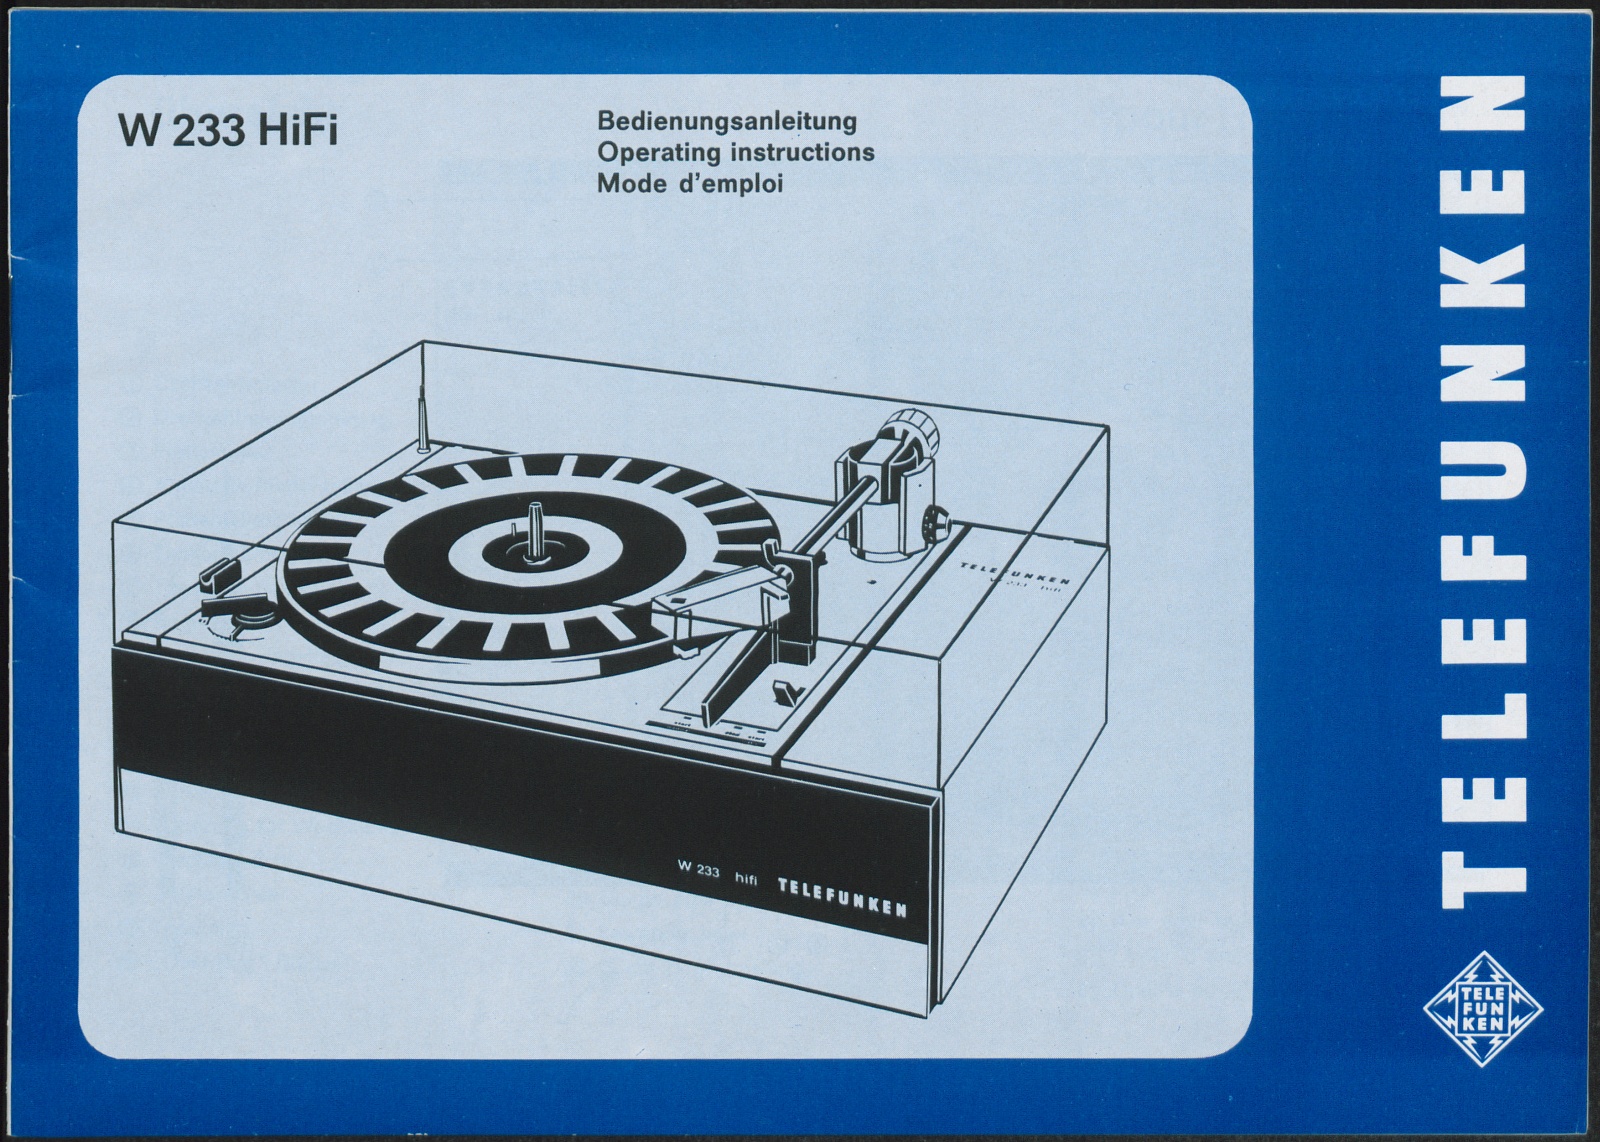 Bedienungsanleitung: Bedienungsanleitung für Telefunken W 233 HiFi (Stiftung Deutsches Technikmuseum Berlin CC0)